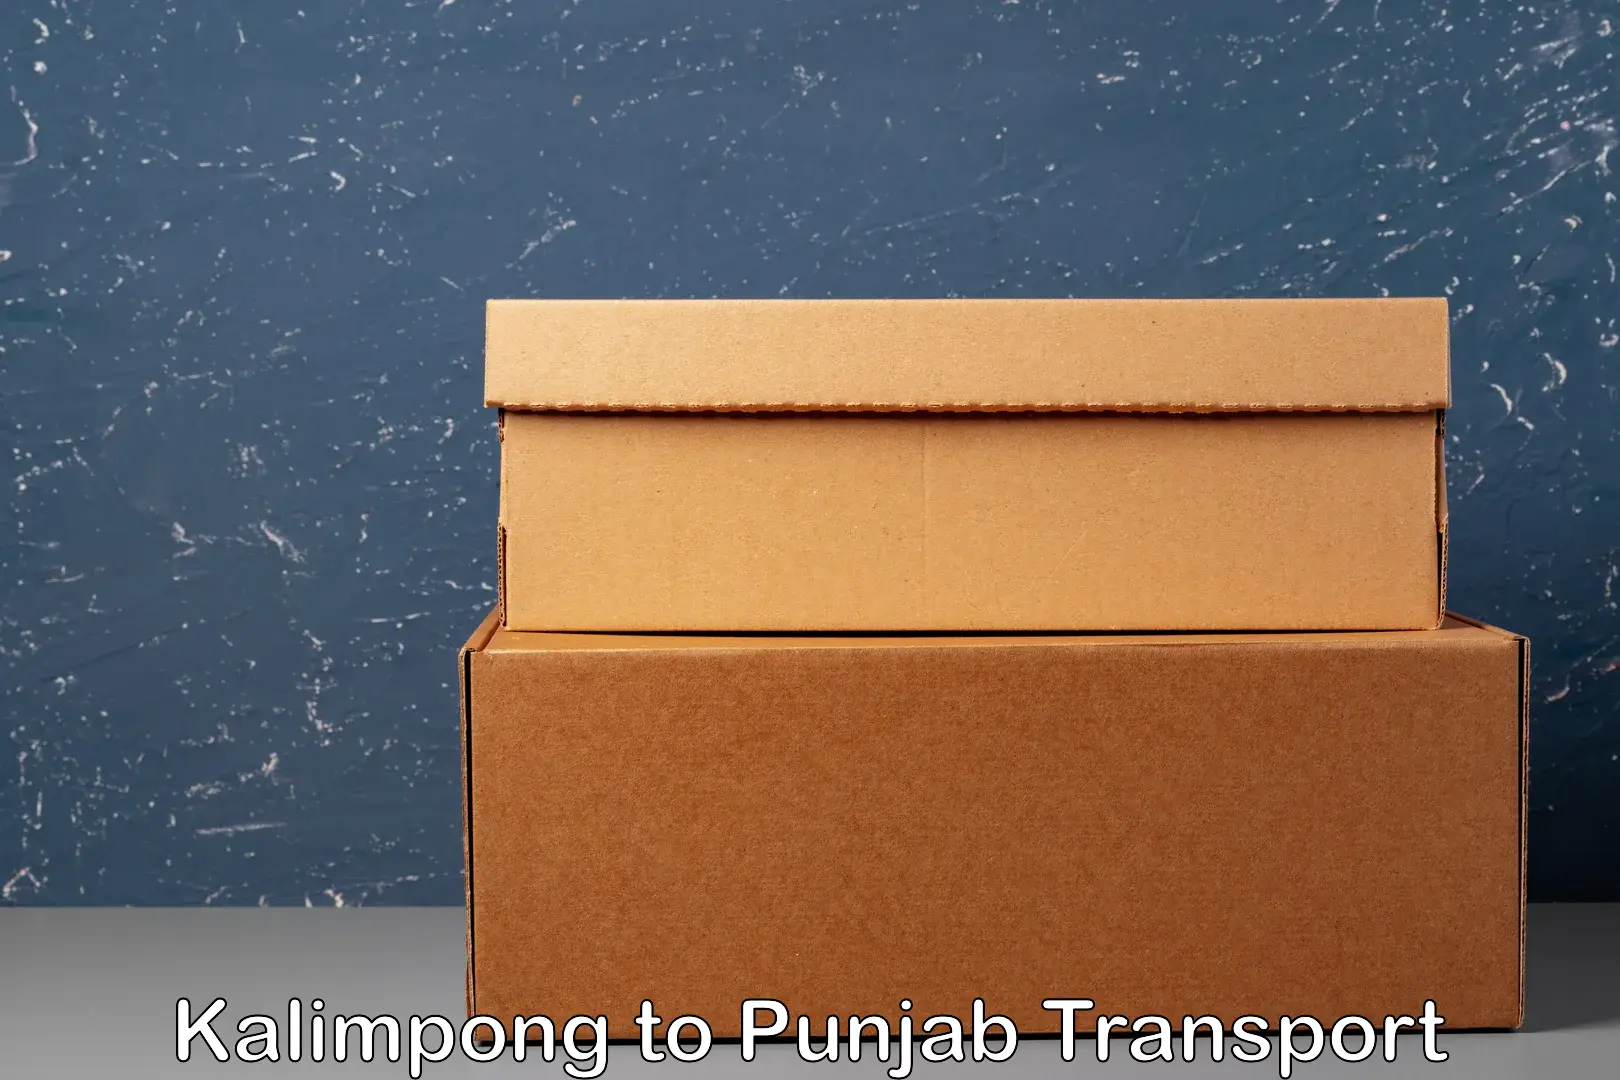 Bike shipping service Kalimpong to Punjab